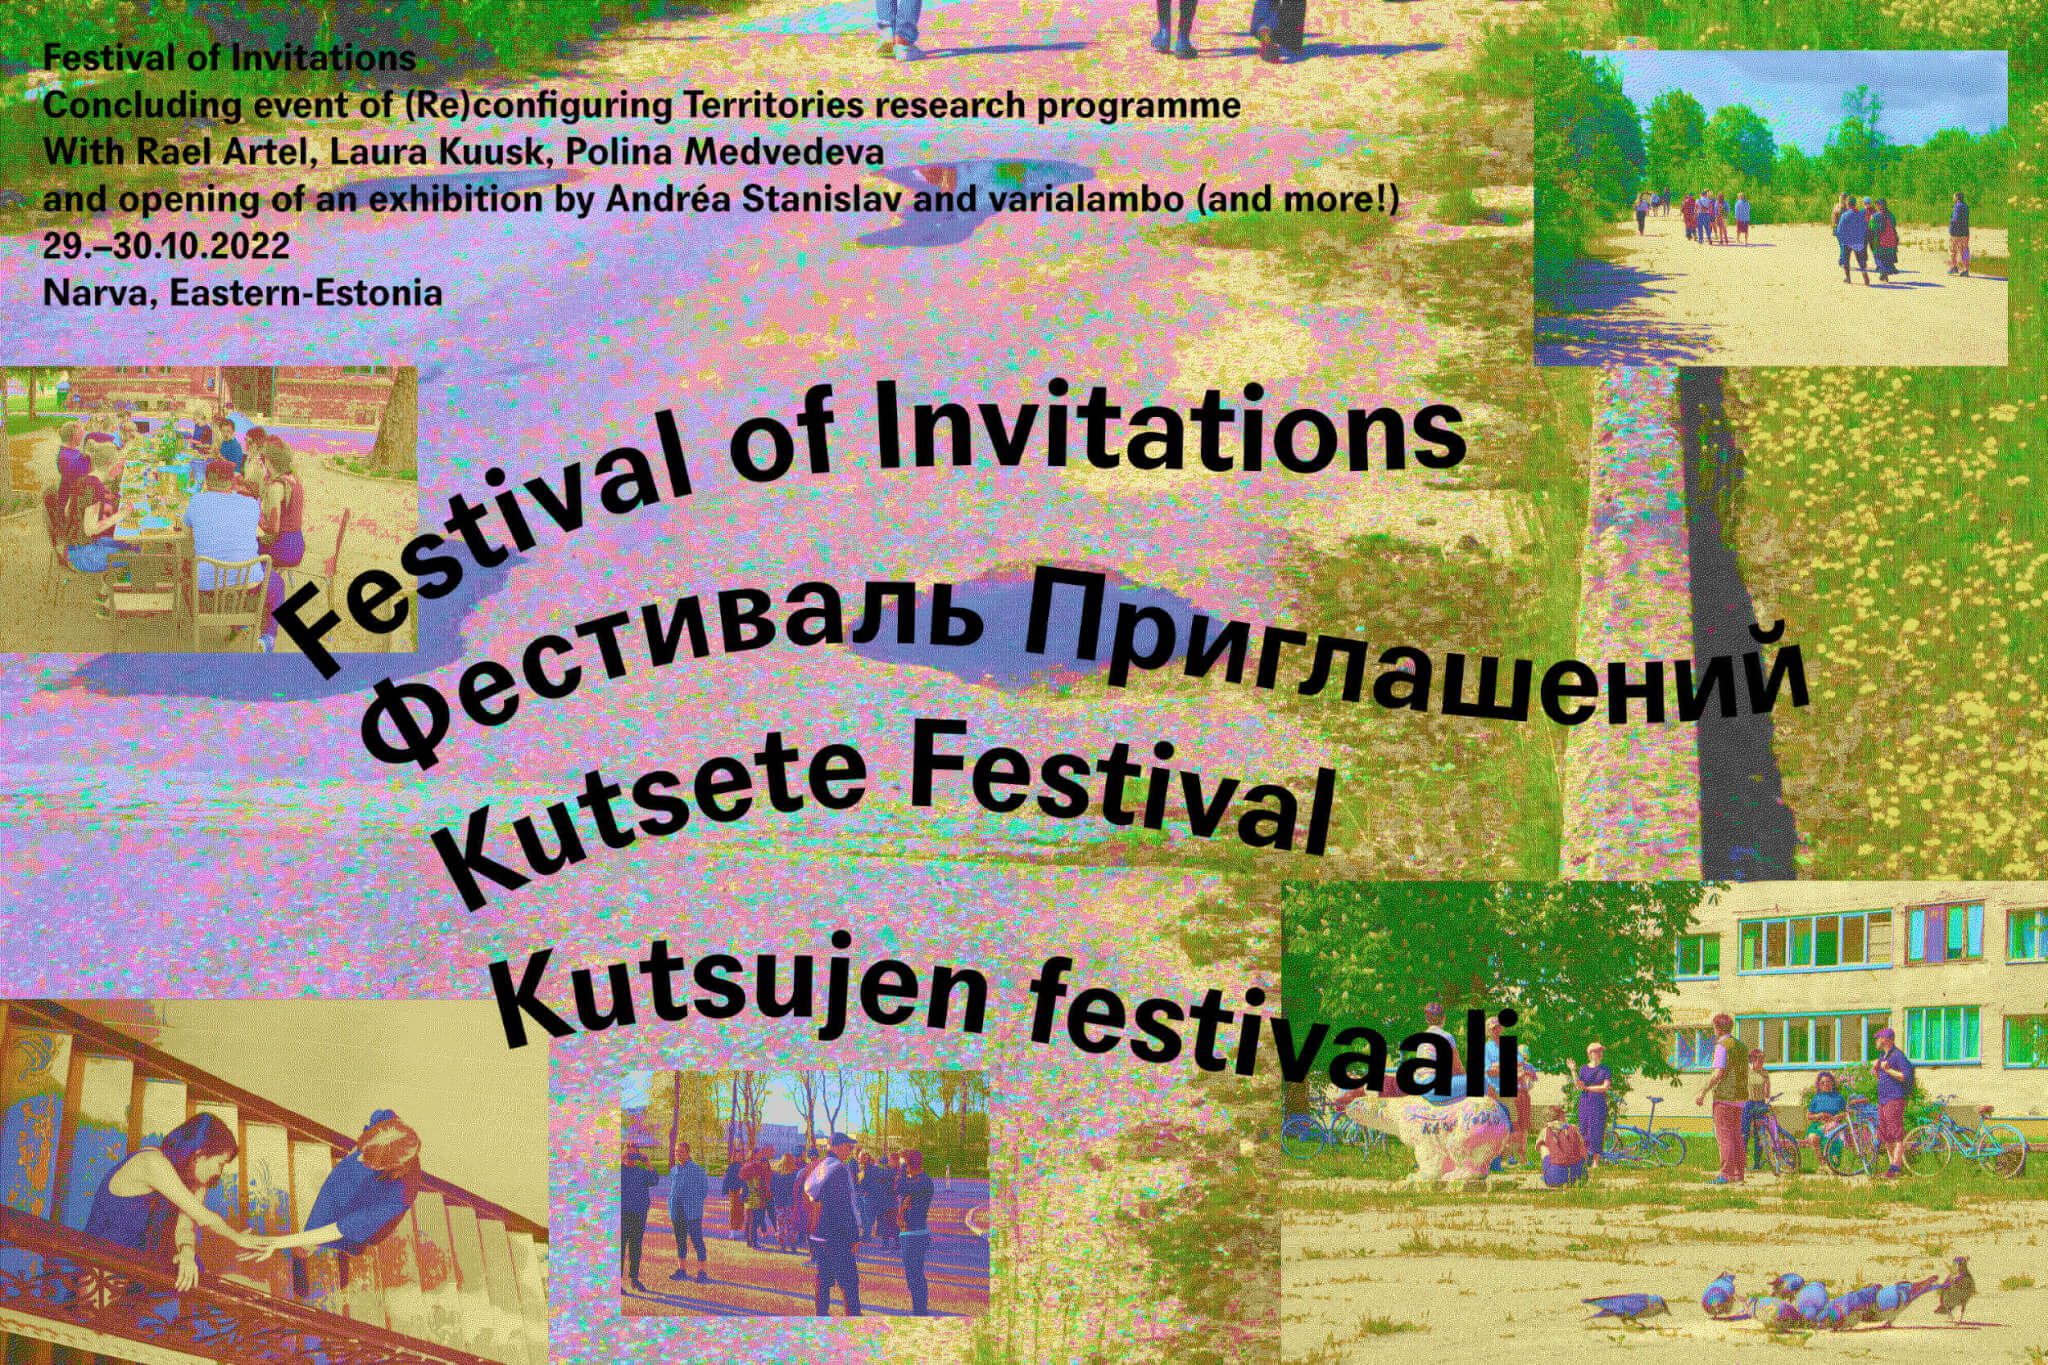 Kutsete Festival